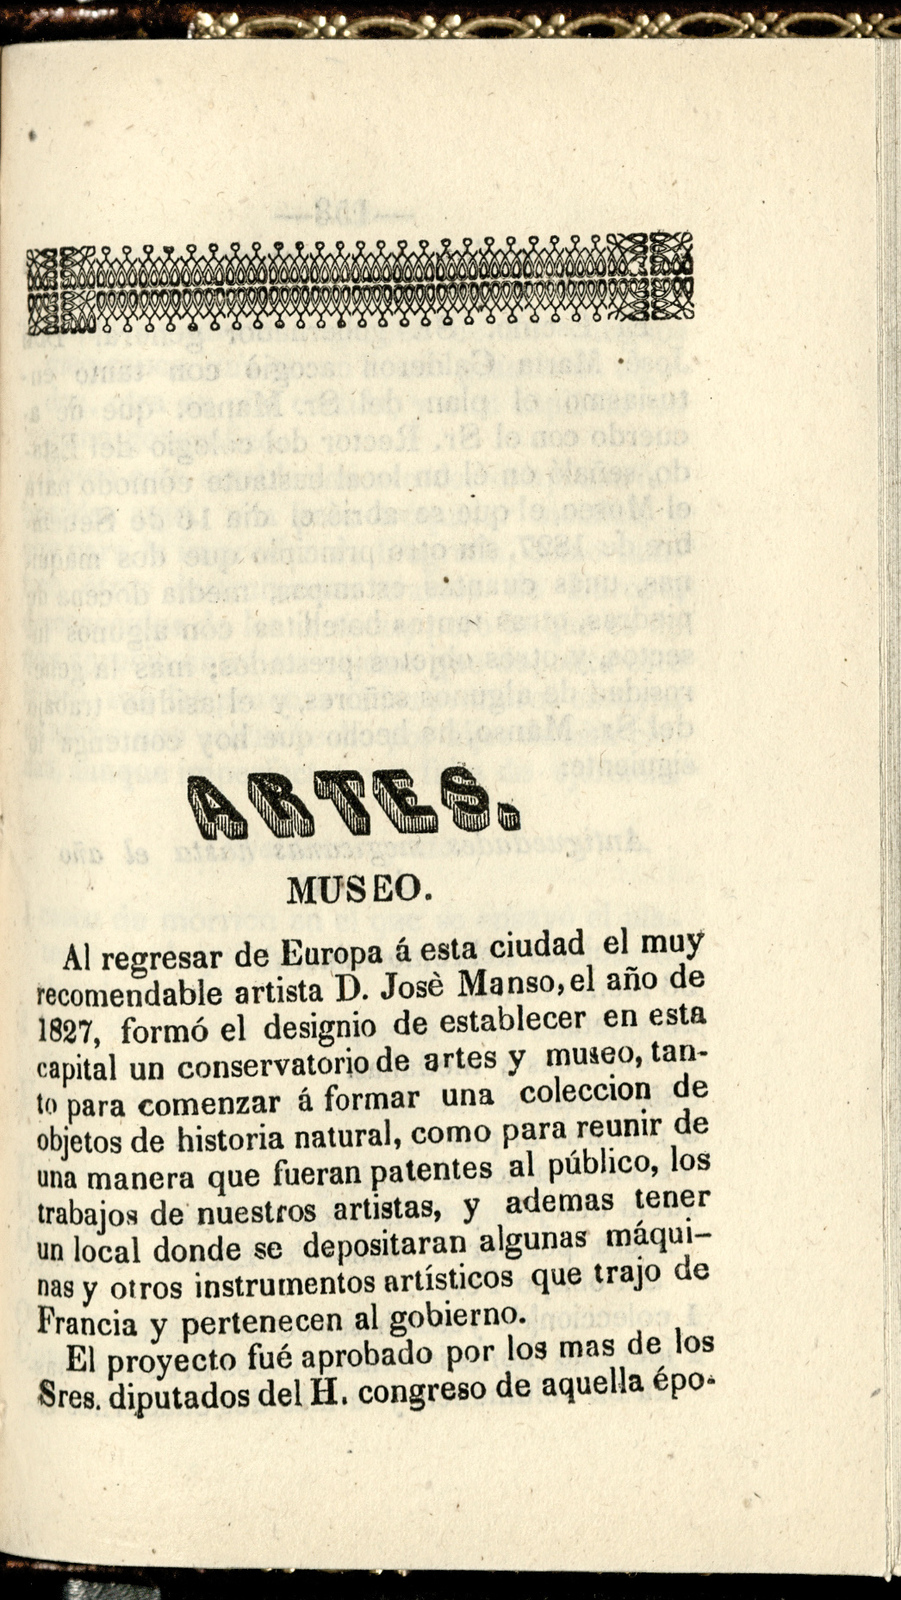 Guia de forasteros de la capital de Puebla, para el año de 1852 / dispuesta por Juan N. del Valle<br />
[80369]